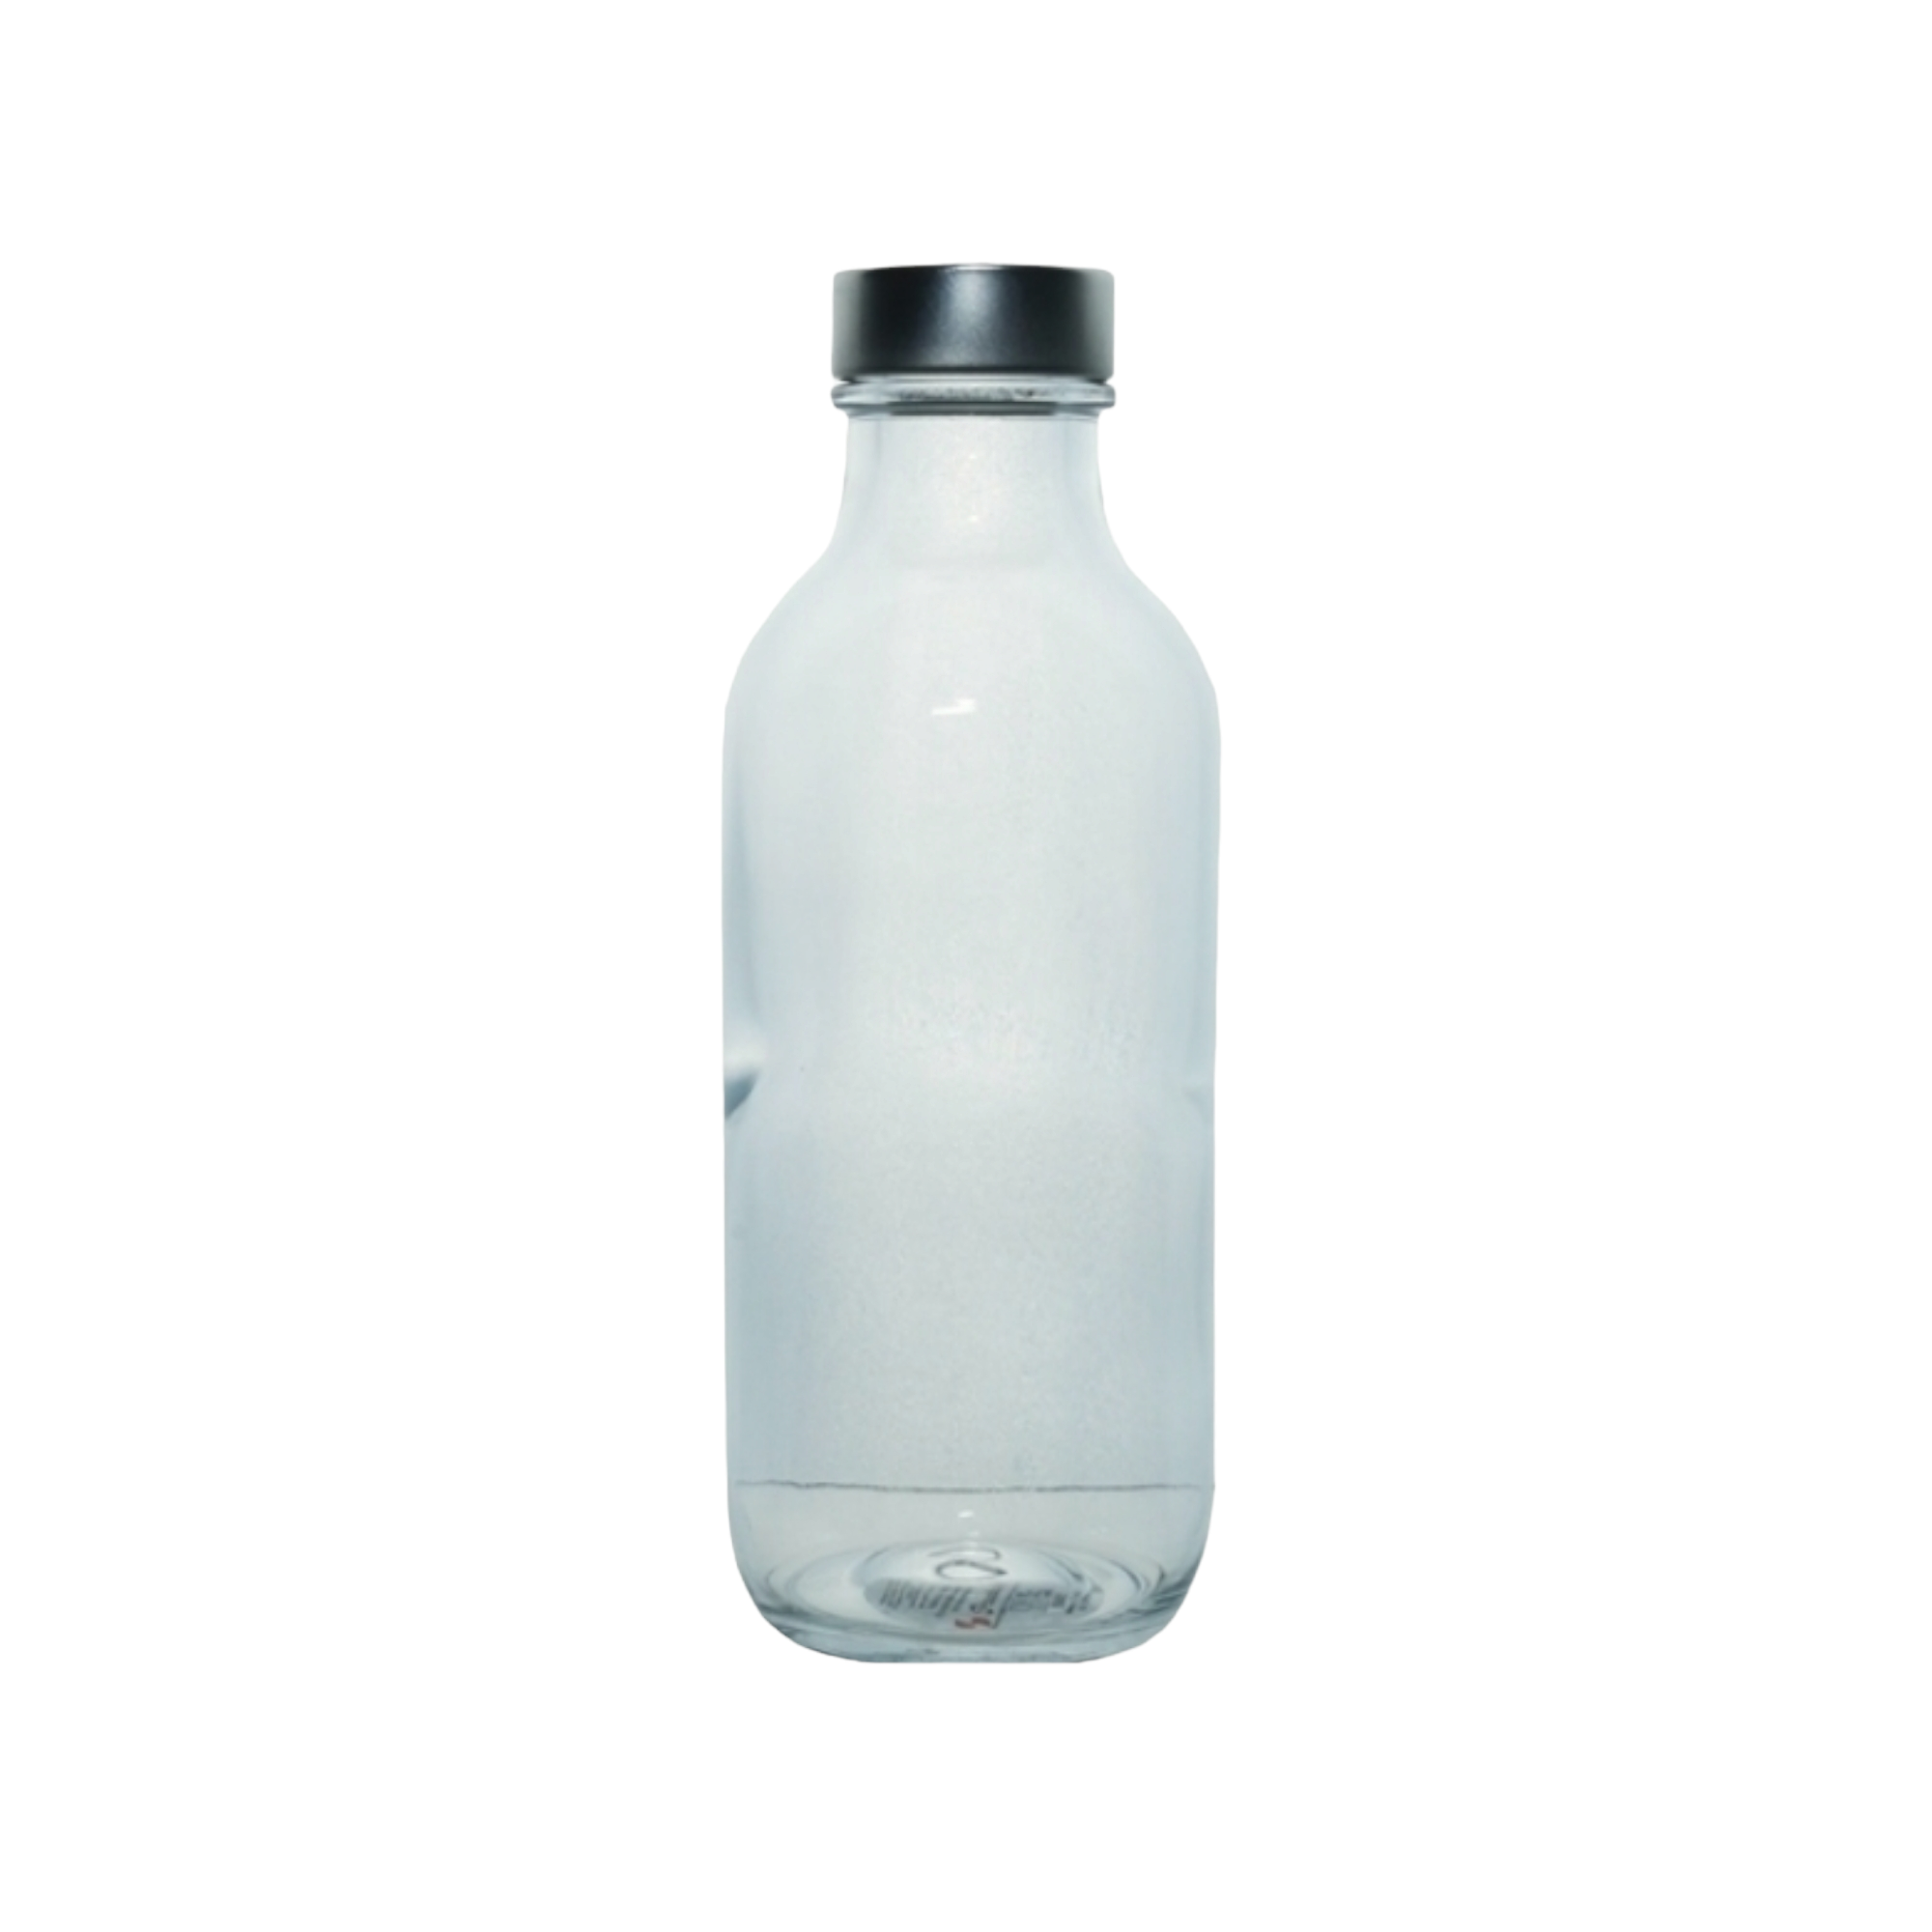 Pasabahce Iconic Glass Fridge Bottle 340ml 24001